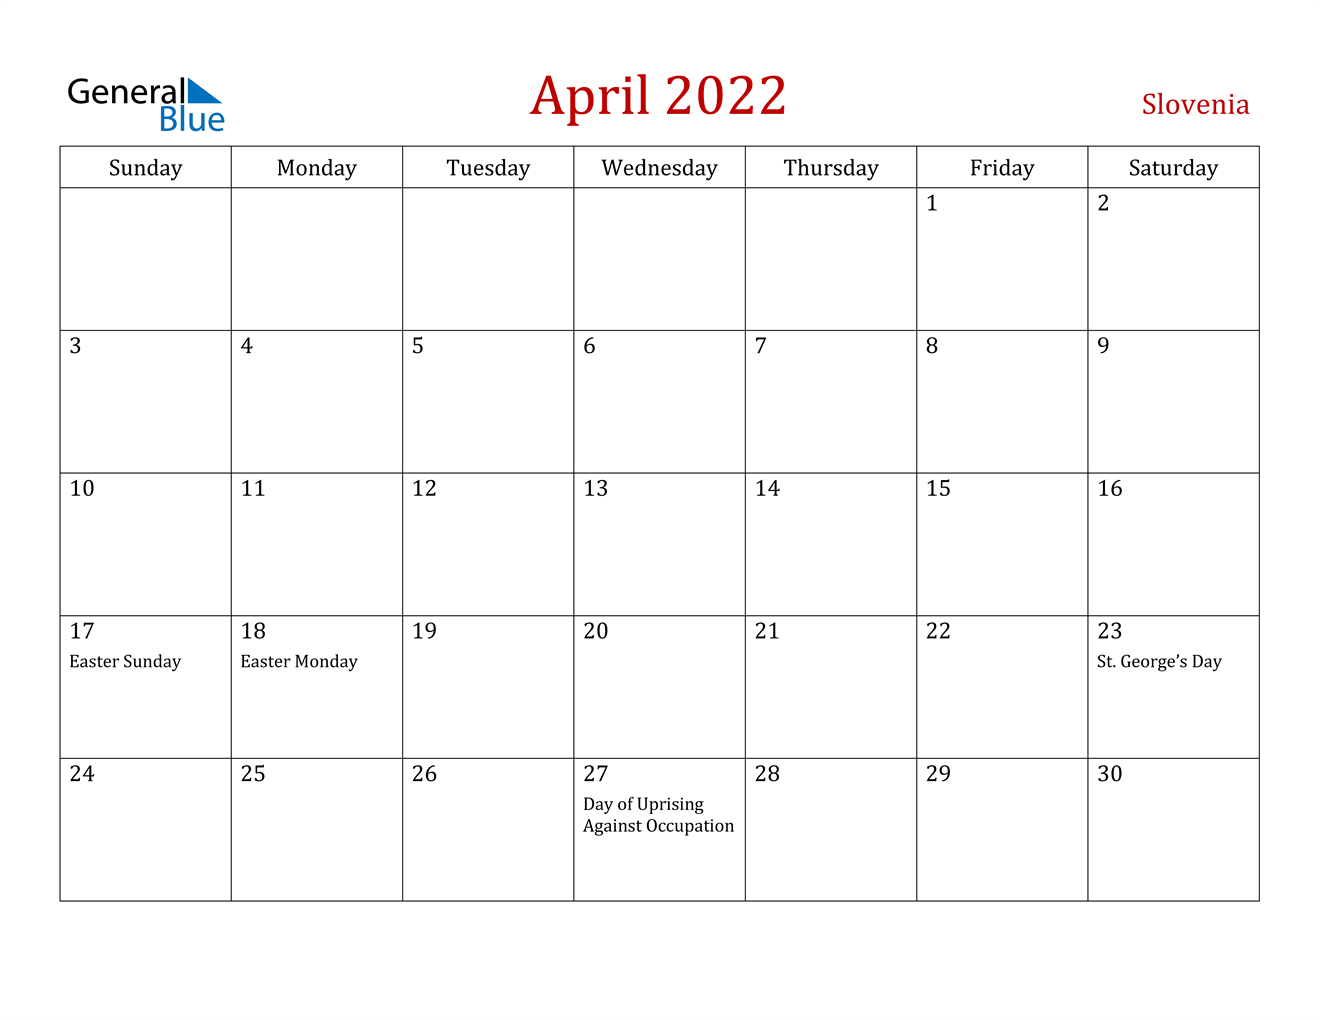 April 2022 Calendar - Slovenia  Calendar For 2022 April